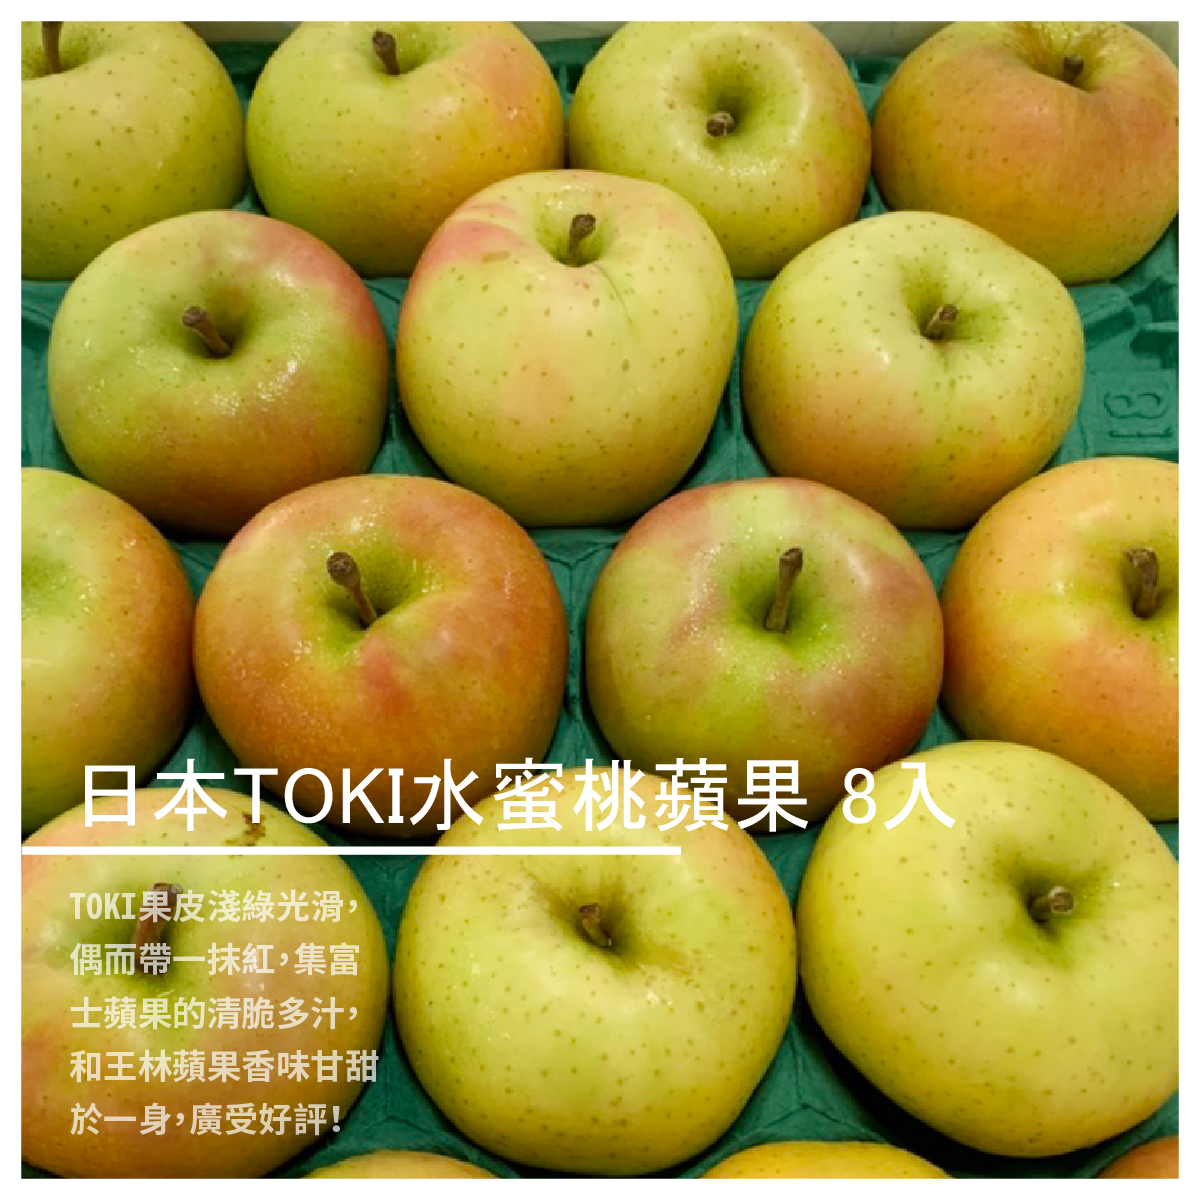 日本TOKI水蜜桃蘋果 8入 商品介紹 日本青森TOKI水蜜桃蘋果，由富士和王林接枝培育而成， 是青森縣近年來品種培育最成功的蘋果之一，TOKI果皮淺綠光滑， 偶而帶一抹紅，集富士蘋果的清脆多汁， 和